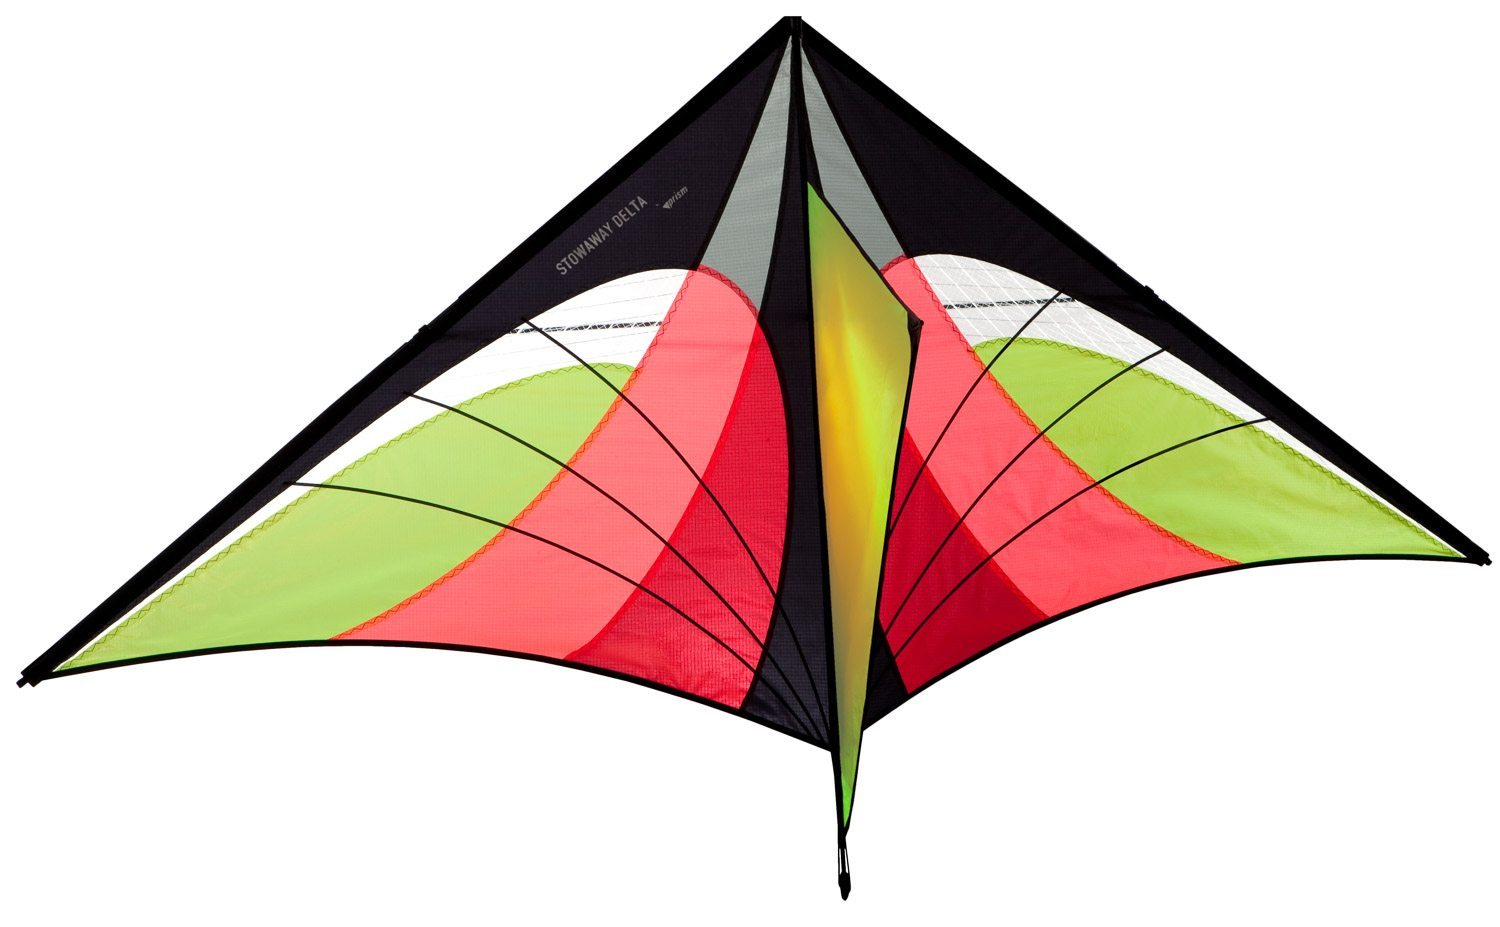 kite shape